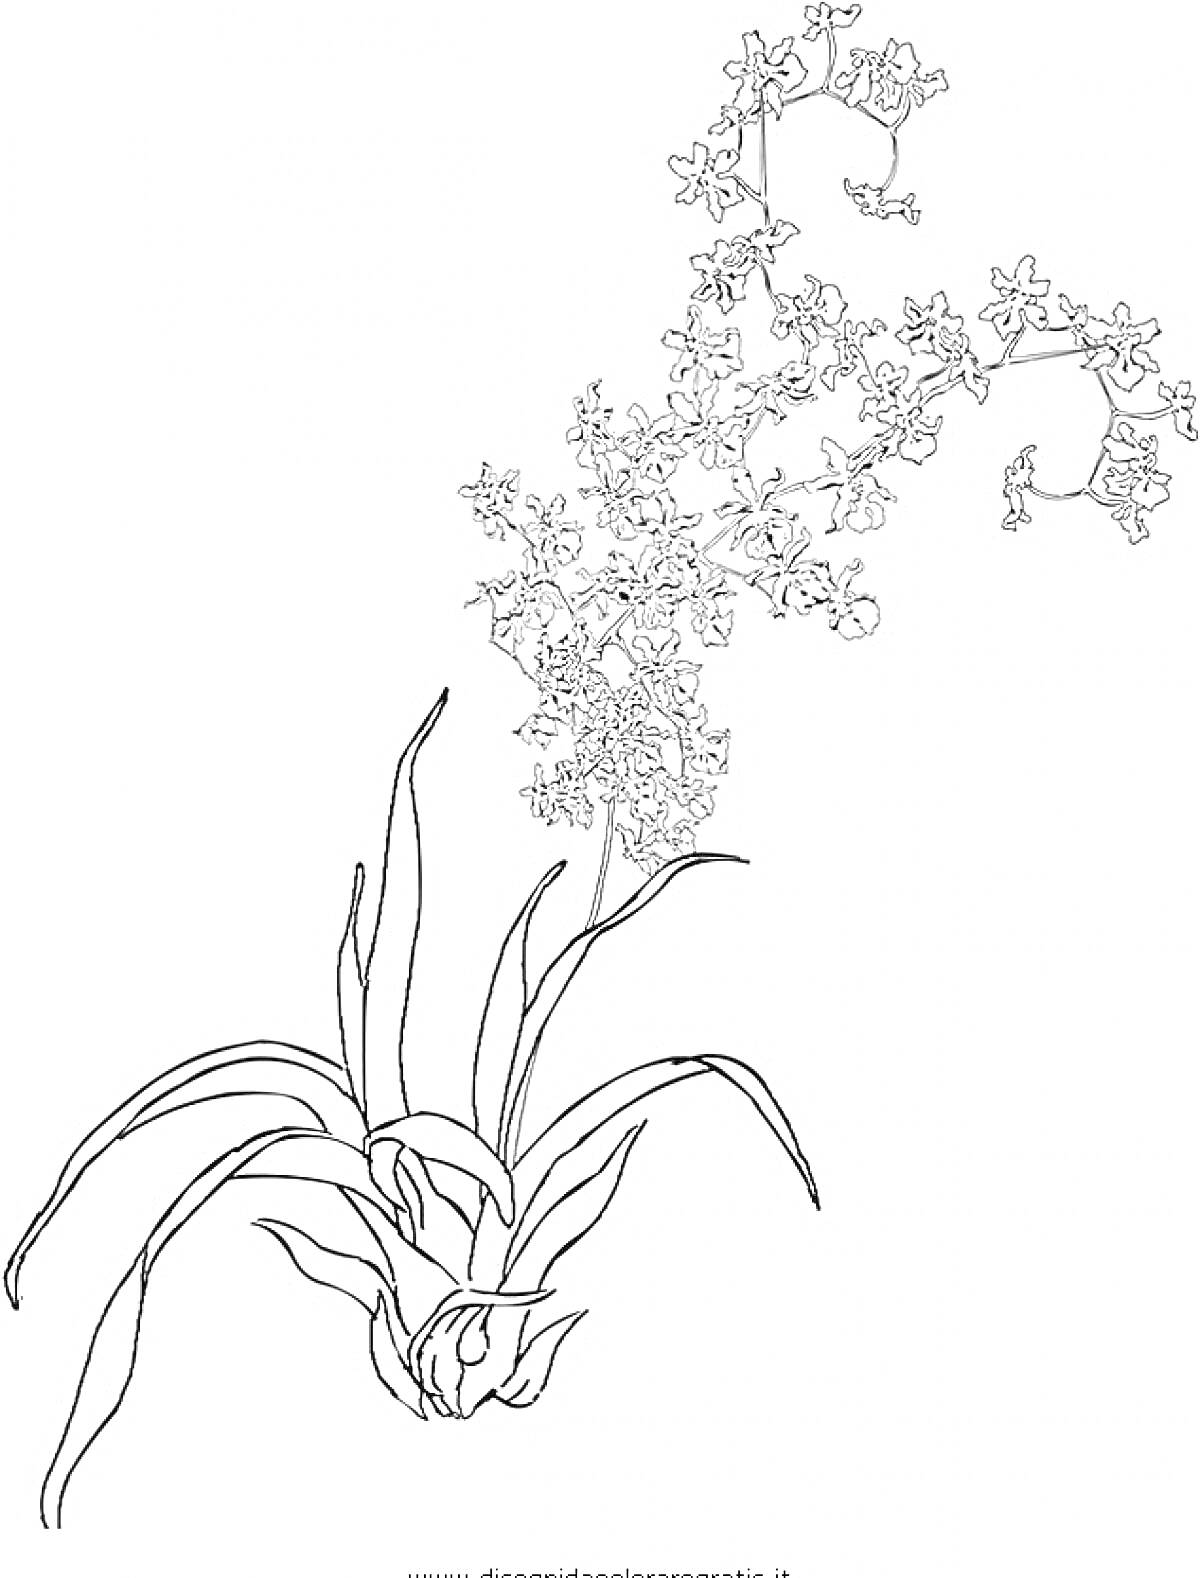 Раскраска орхидеи с длинным стеблем и многочисленными мелкими цветками